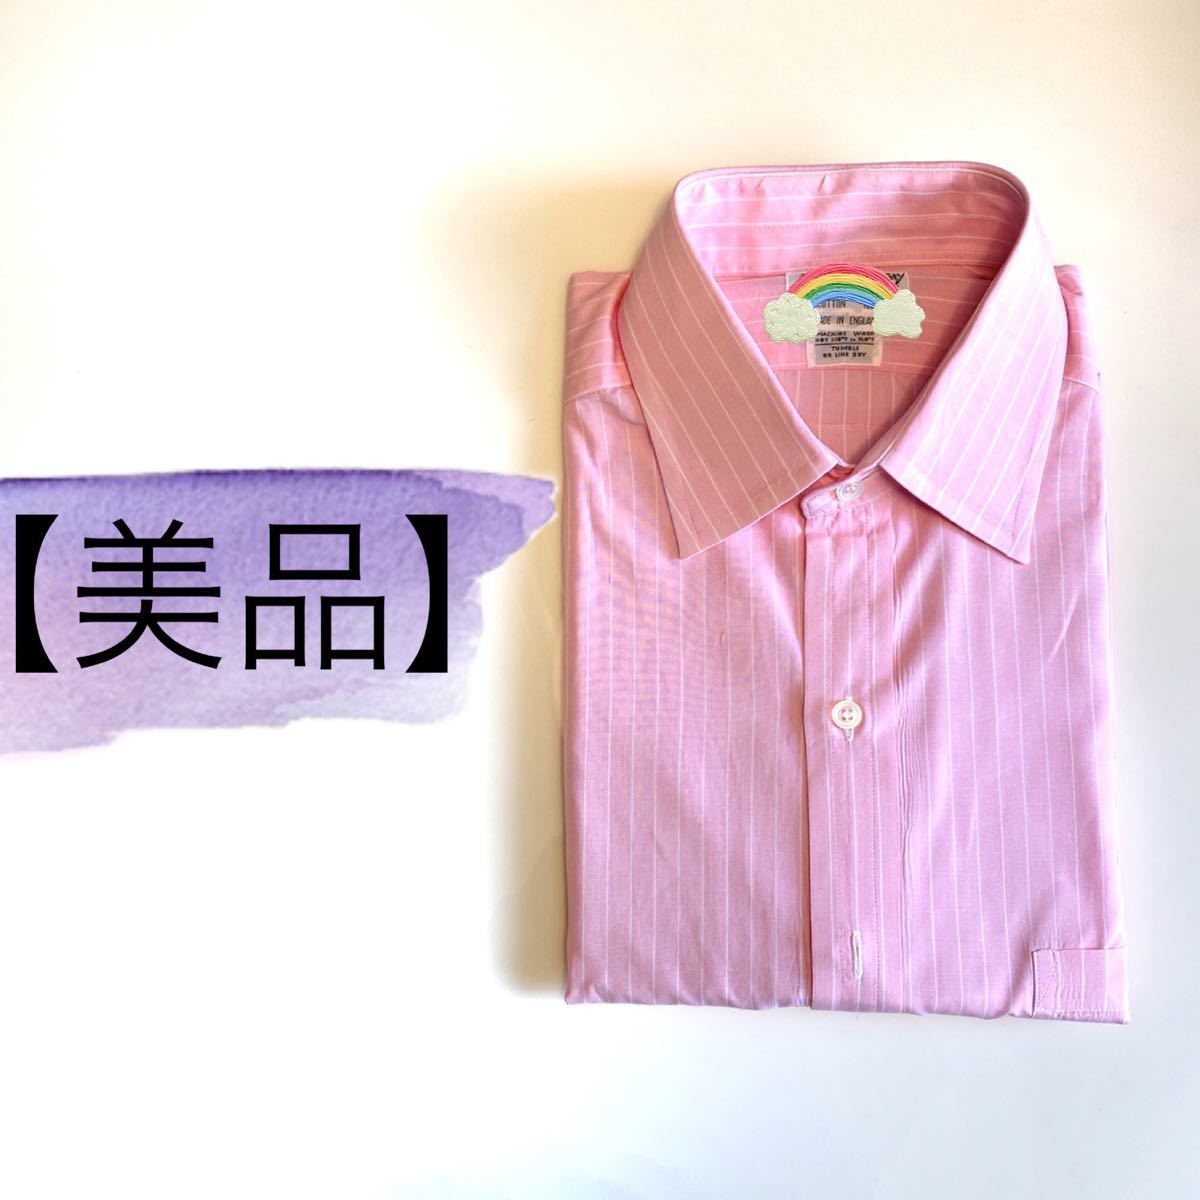 Paypayフリマ 美品 イギリス製 ワイシャツ Yシャツ メンズ 長袖 ピンク ストライプ 新生活 送料込